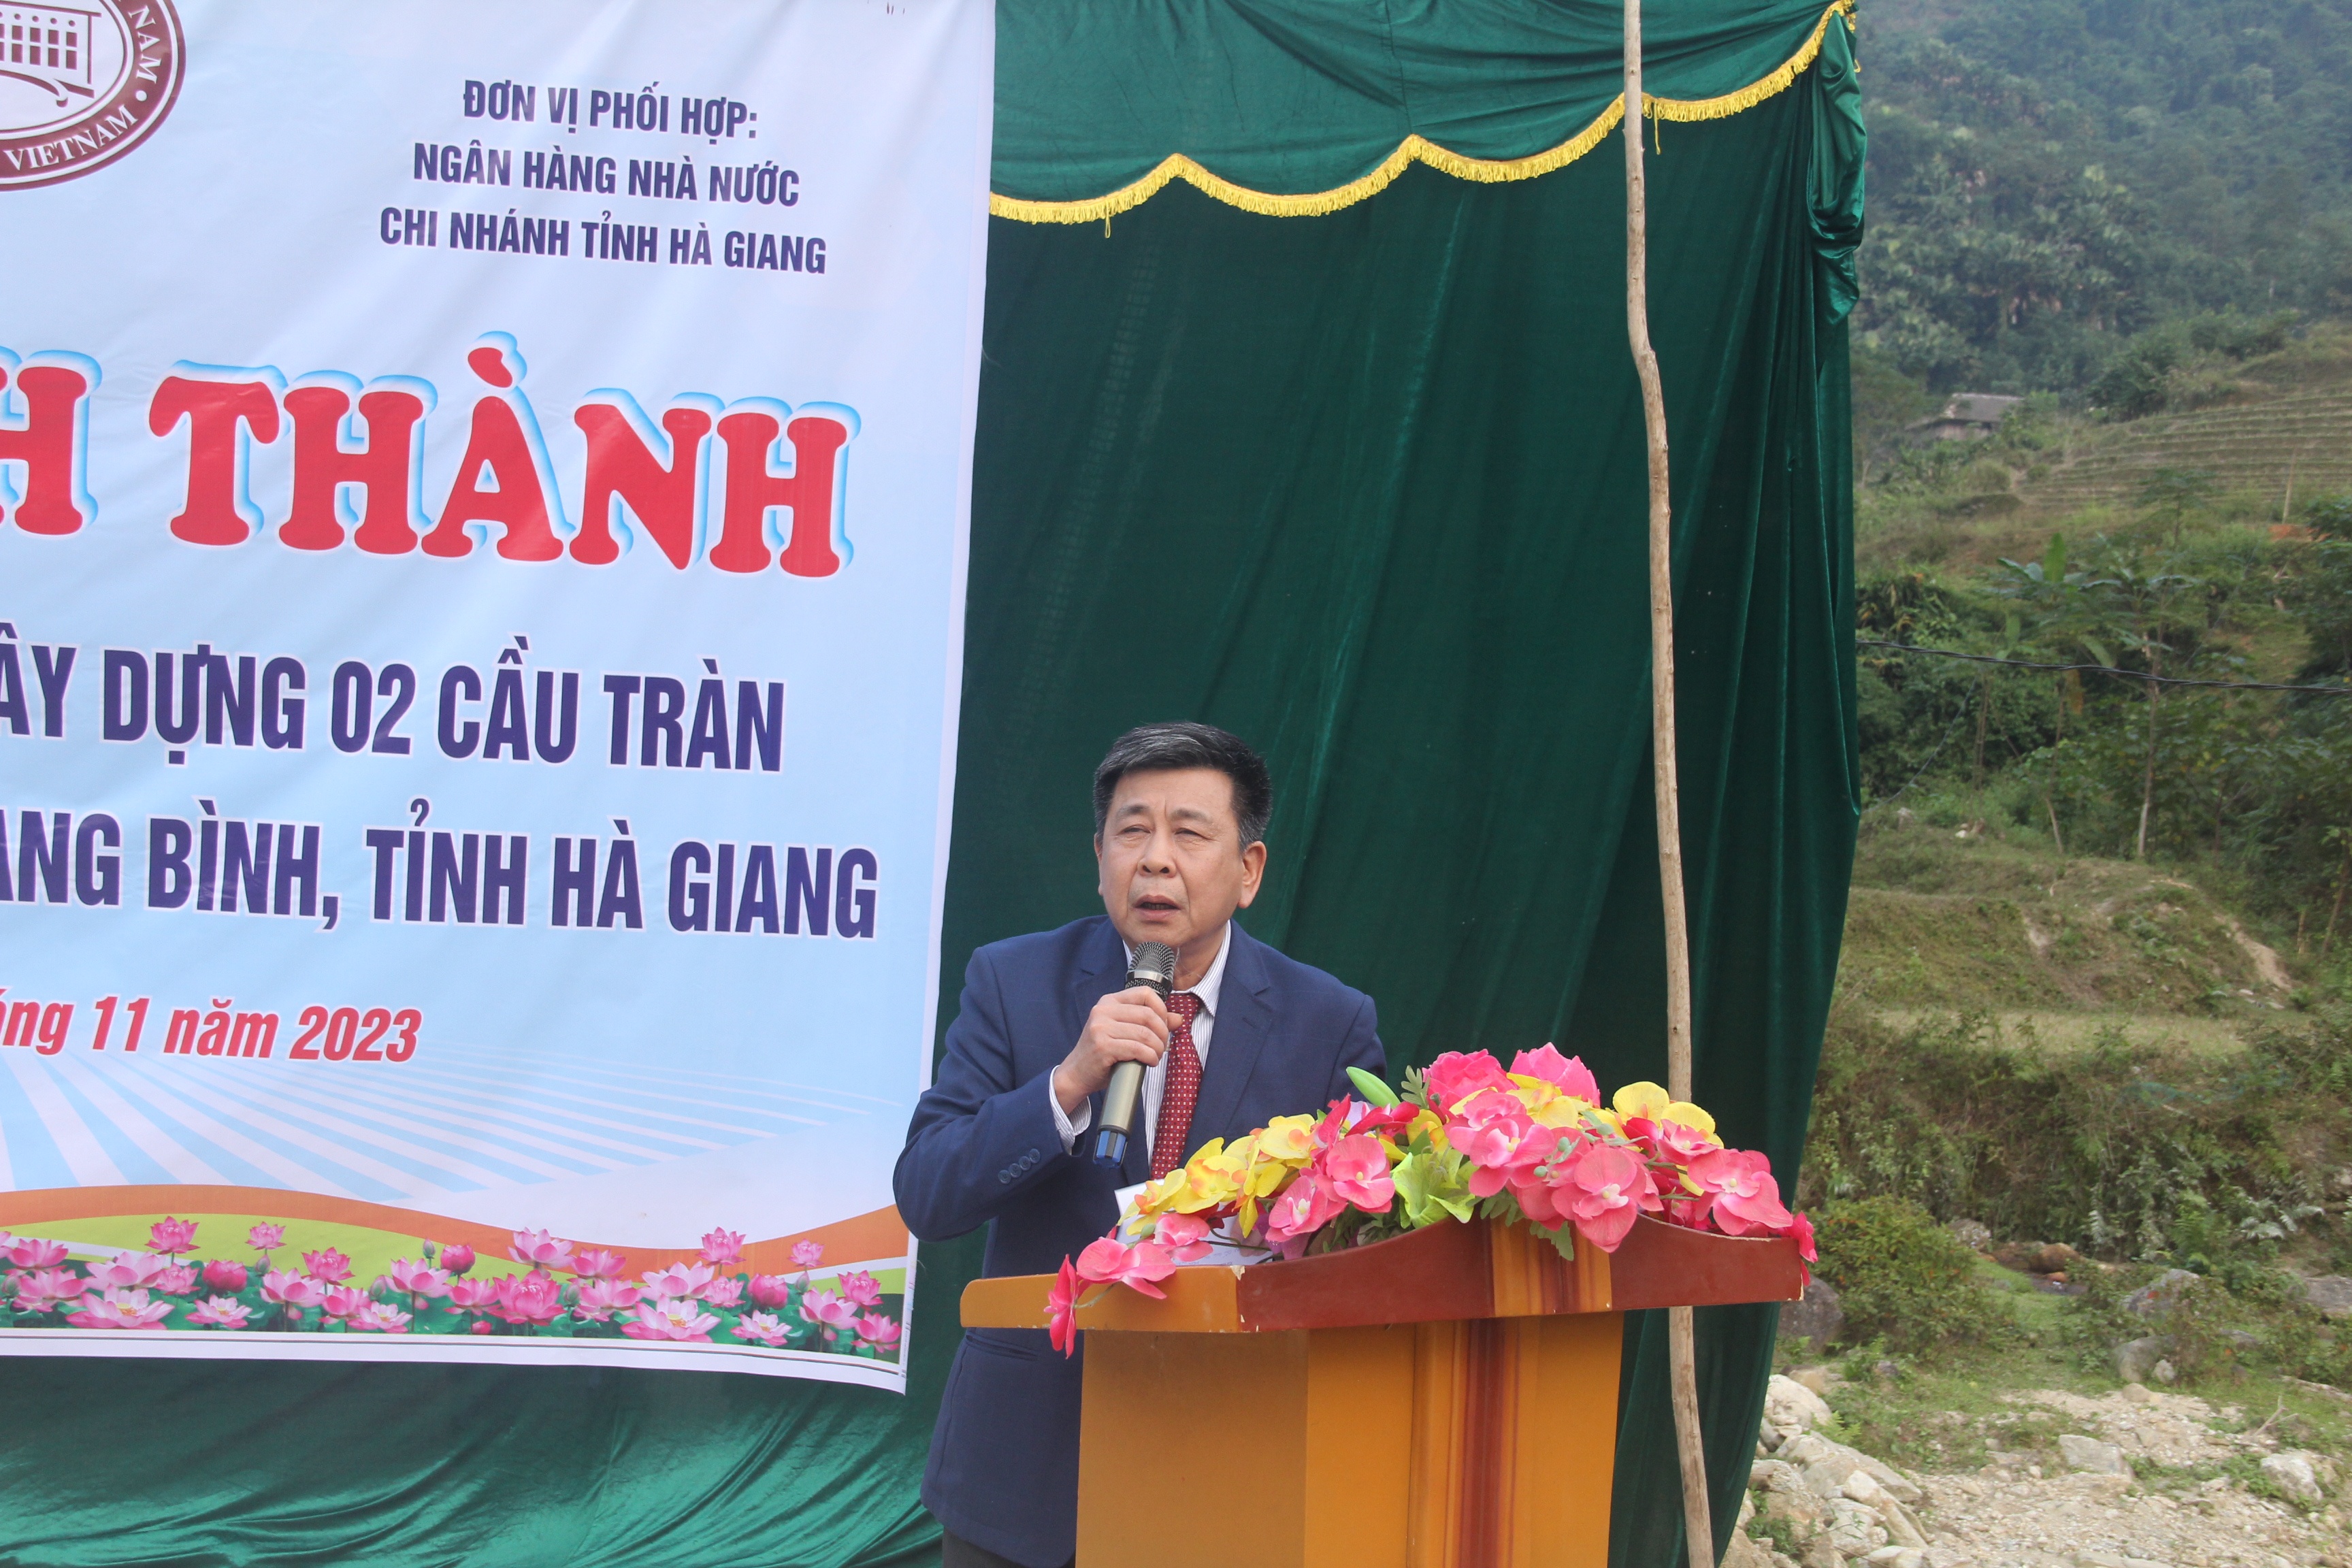 Ông Lê Thái Nam, Bí thư Đảng ủy, Chủ tịch hội đồng thành viên nhà máy In tiền Quốc gia phát biểu tại buổi lễ